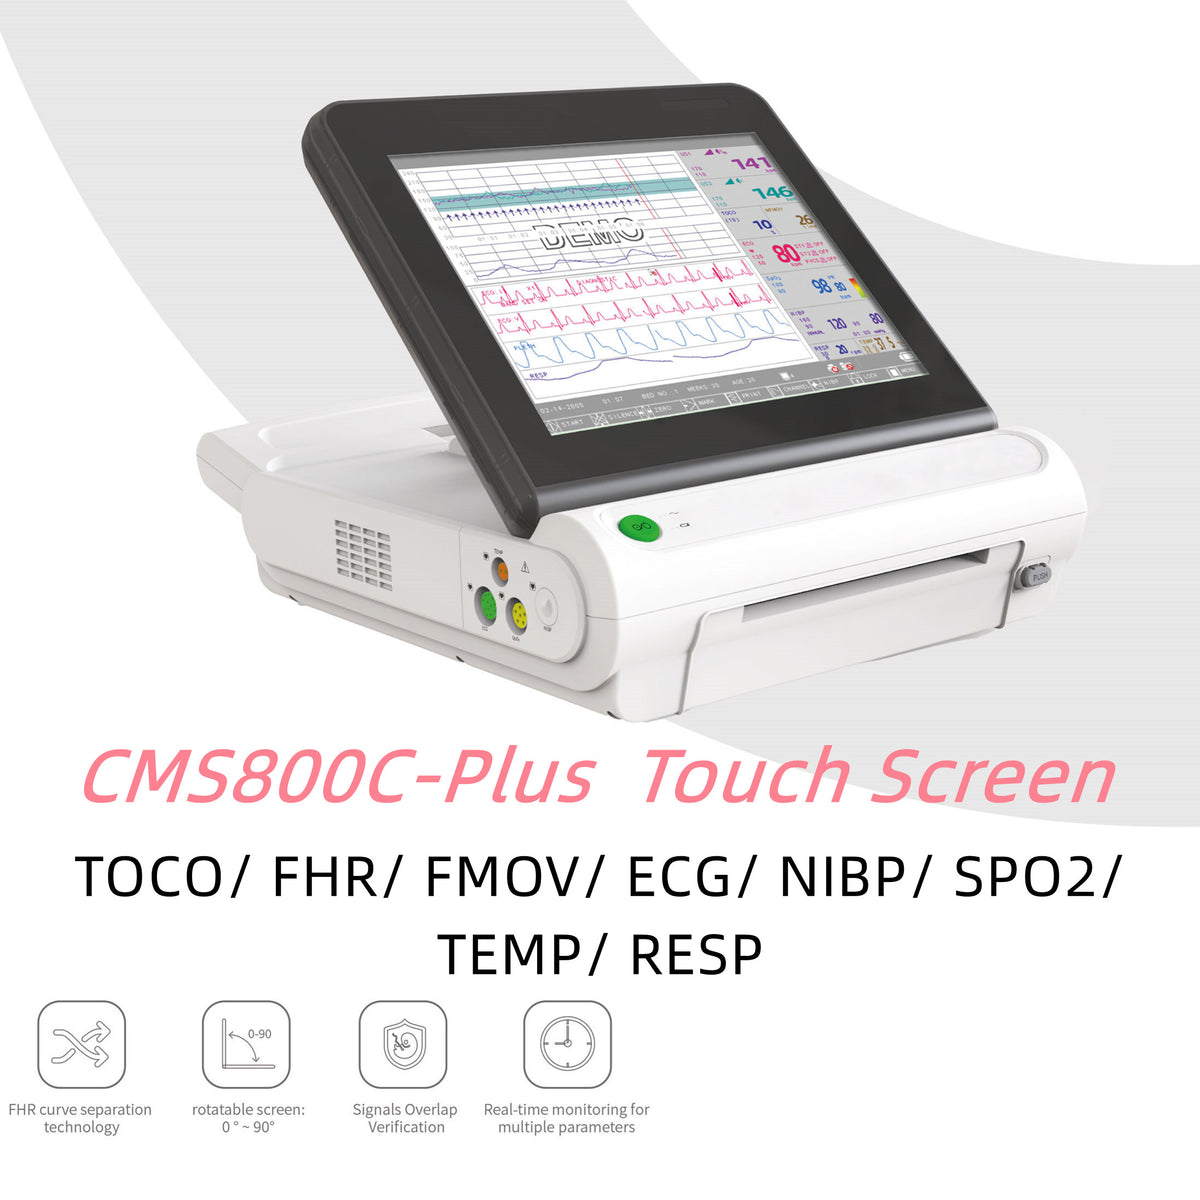 CONTEC CMS800A moniteur fœtal portable haute résolution moniteur de ry